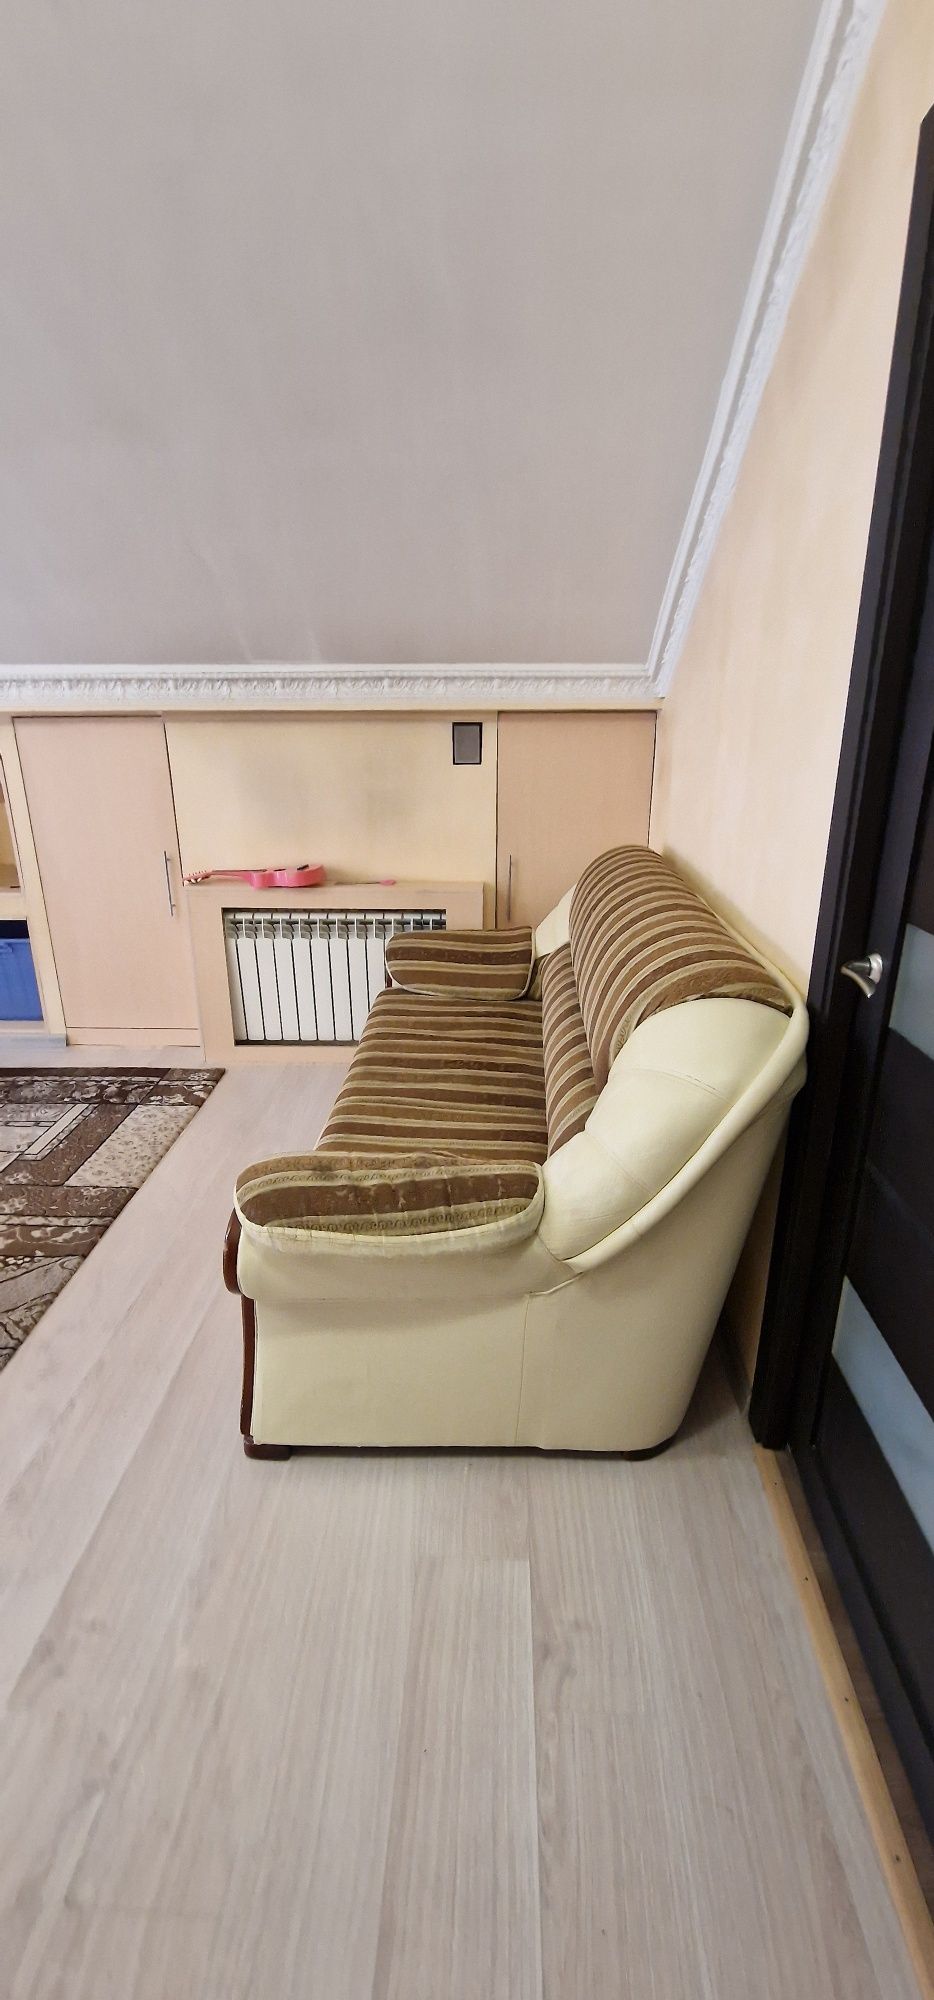 Продам диван 200×100 сложанный и  ракладывается 200 длина и ширина 150